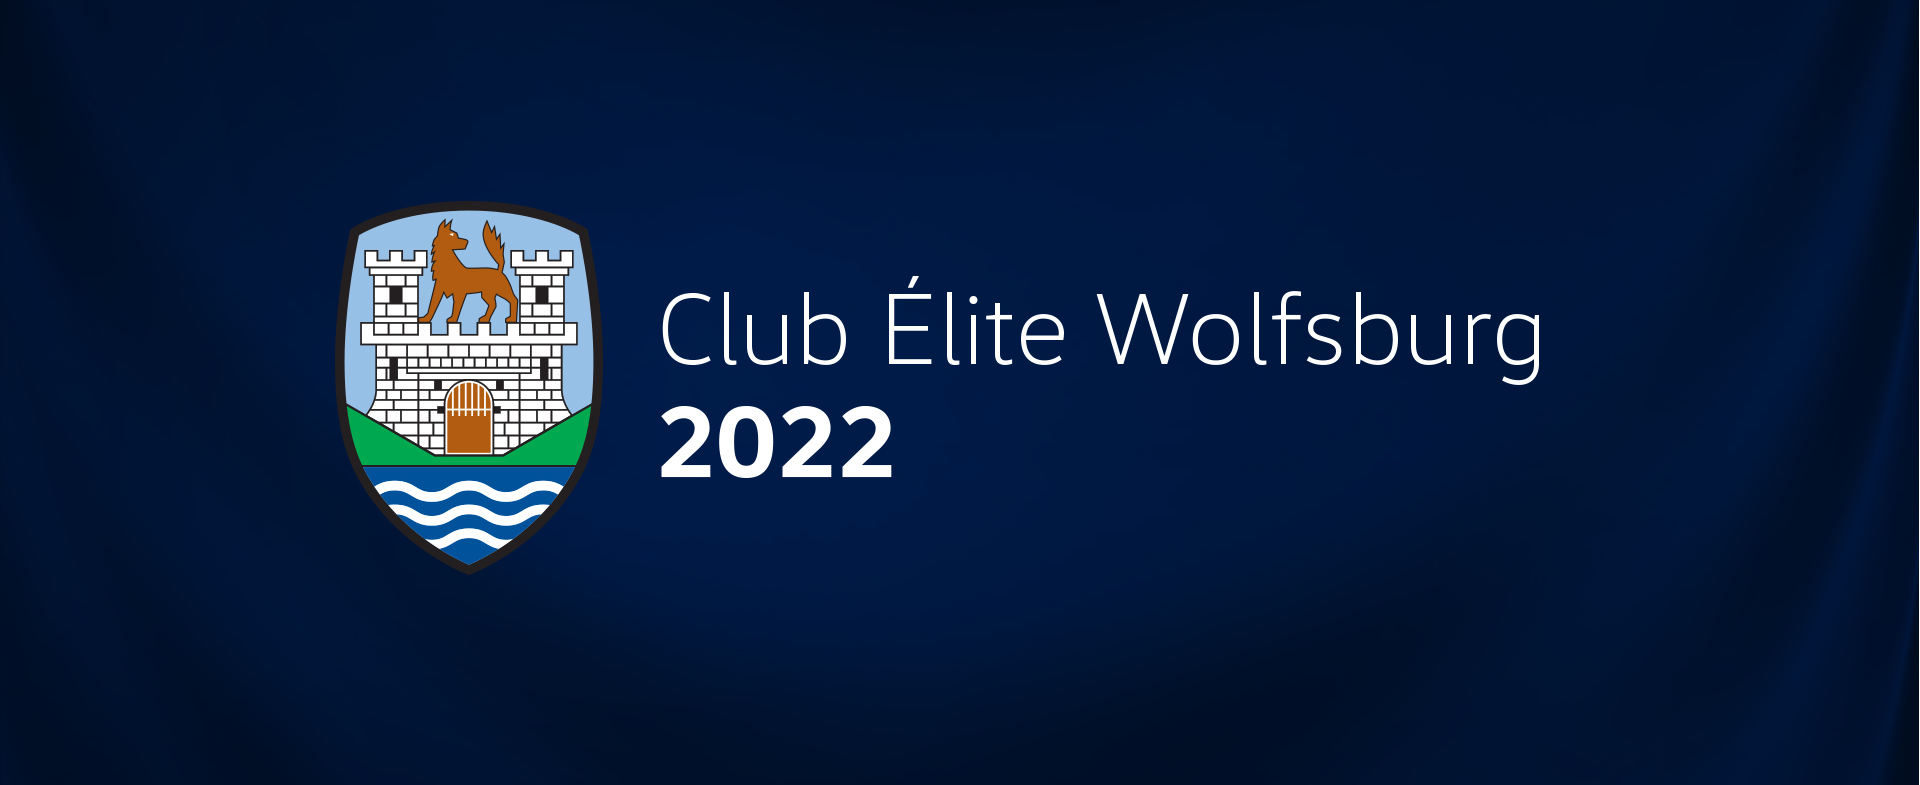 Club Élite Wolfsburg 2022